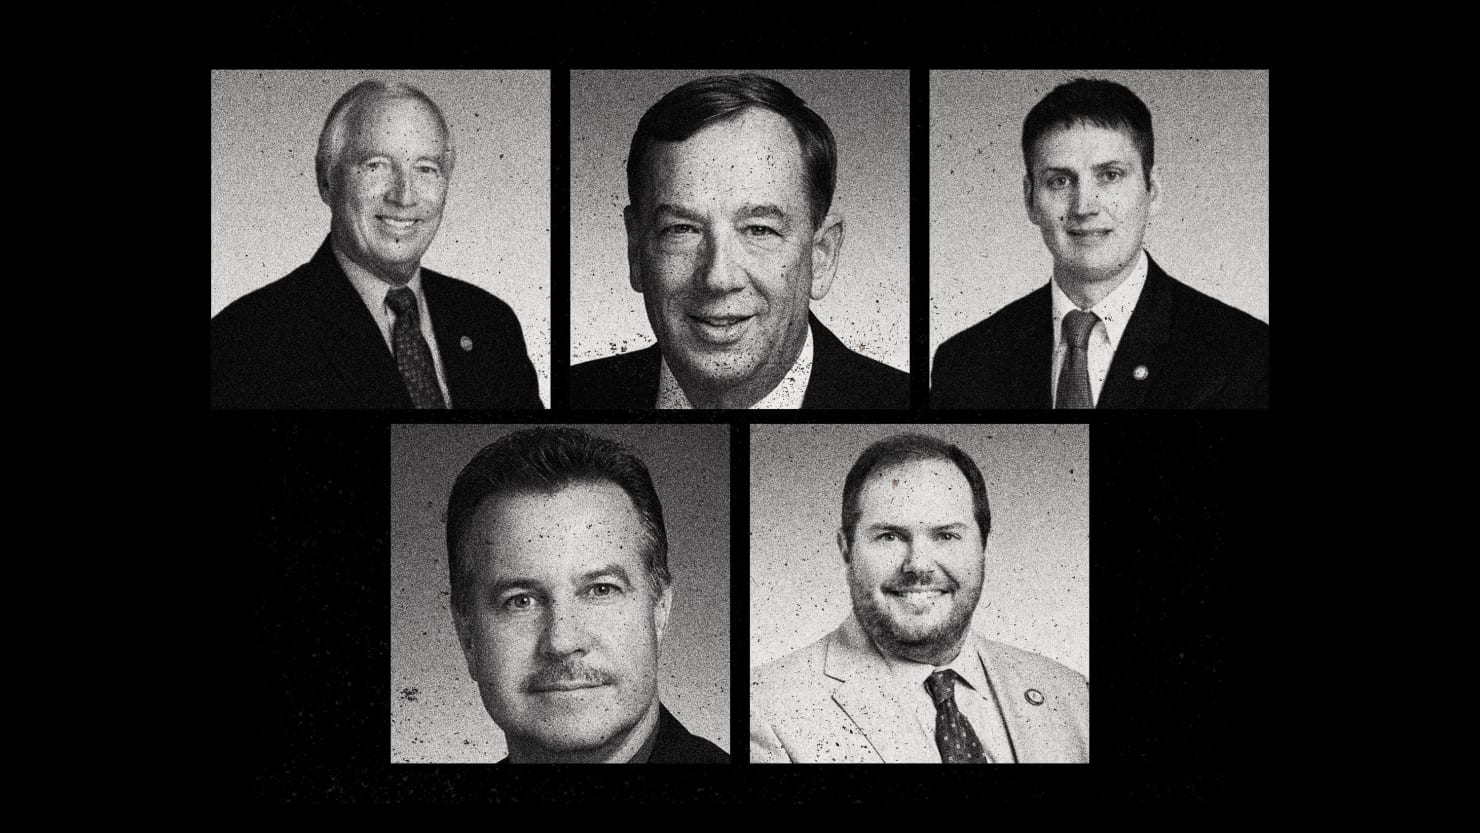 ¿Por qué estos 5 votaron para expulsar a los representantes negros de Tennessee pero mantuvieron a su colega blanco?